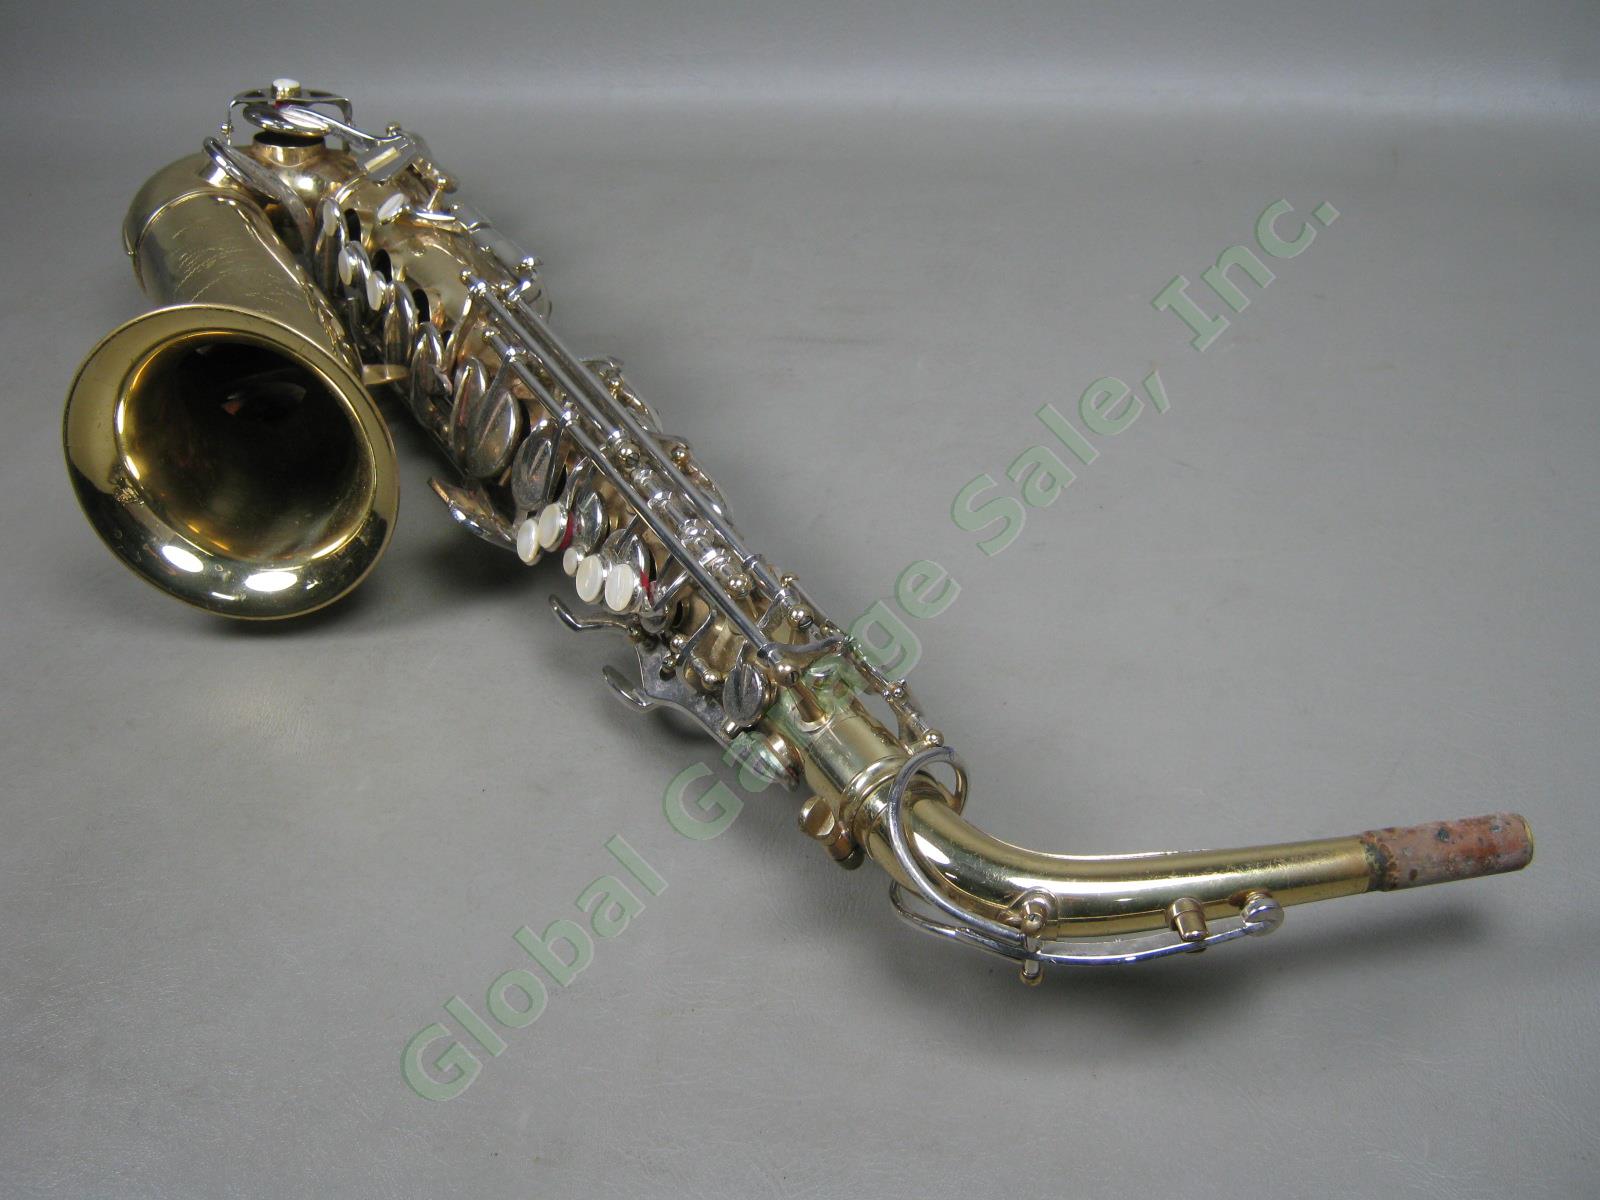 Vtg 1960s Conn USA Alto Saxophone W/ Neck Hard Case Bundle Lot Serial L30897 NR! 3